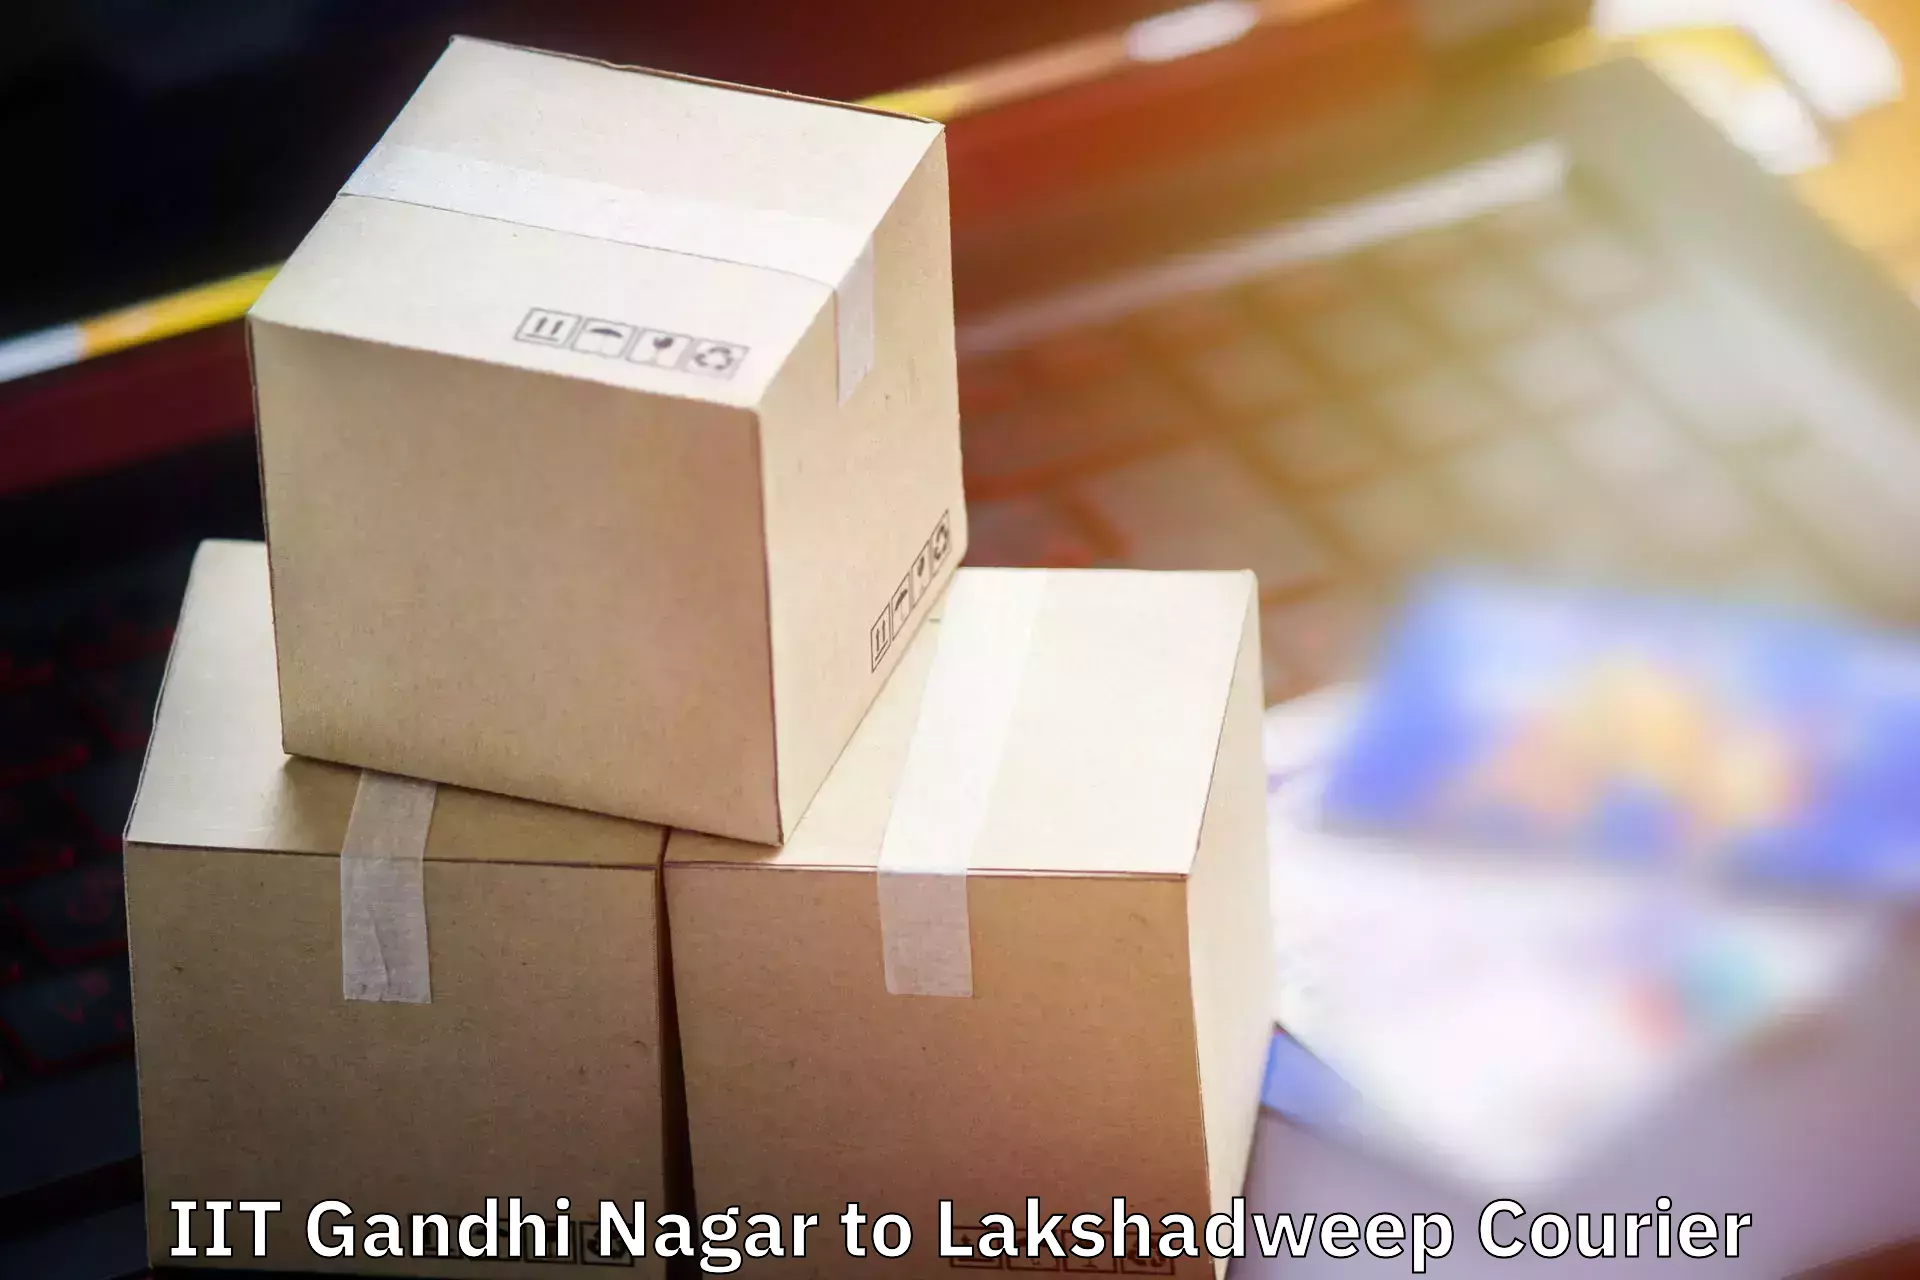 Luggage transport deals IIT Gandhi Nagar to Lakshadweep